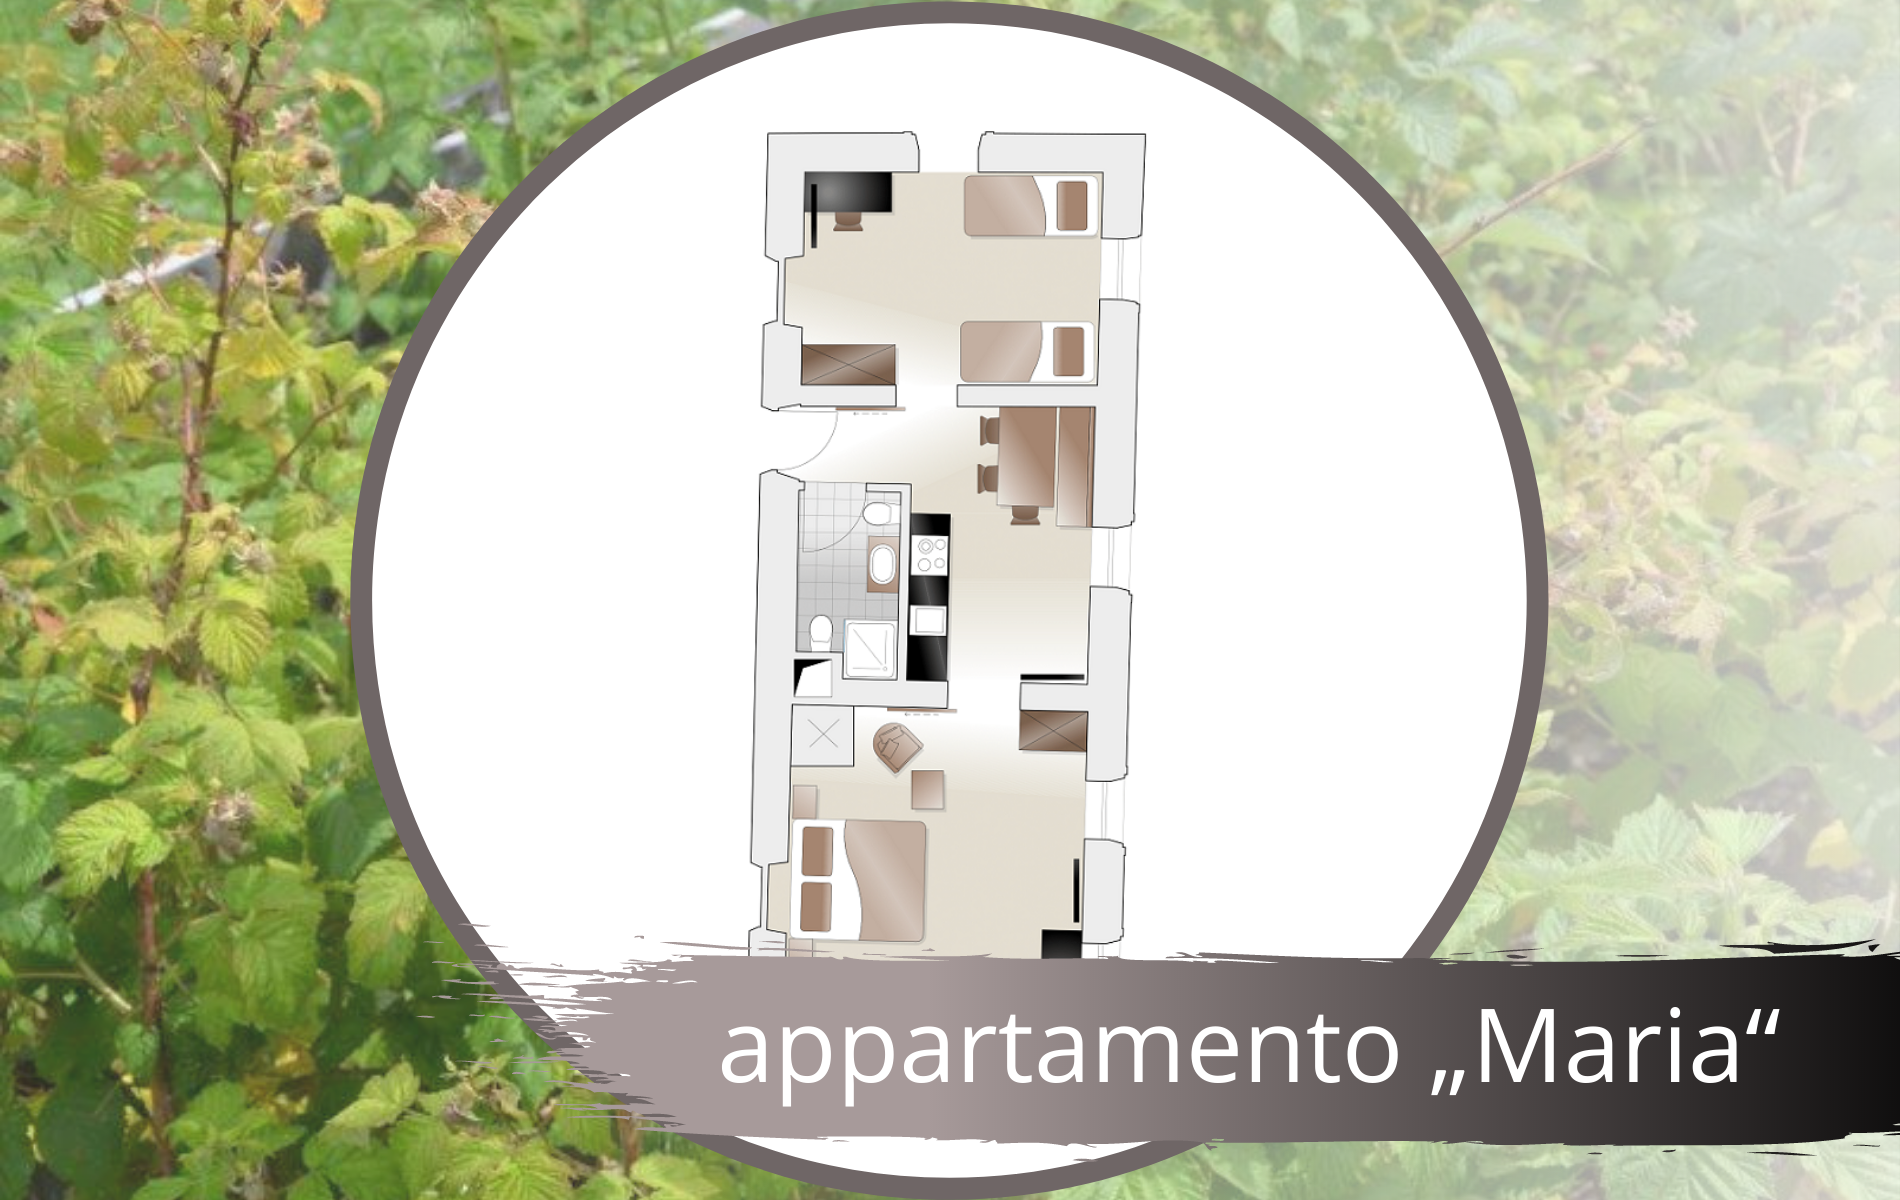 Apartment „Maria“ it